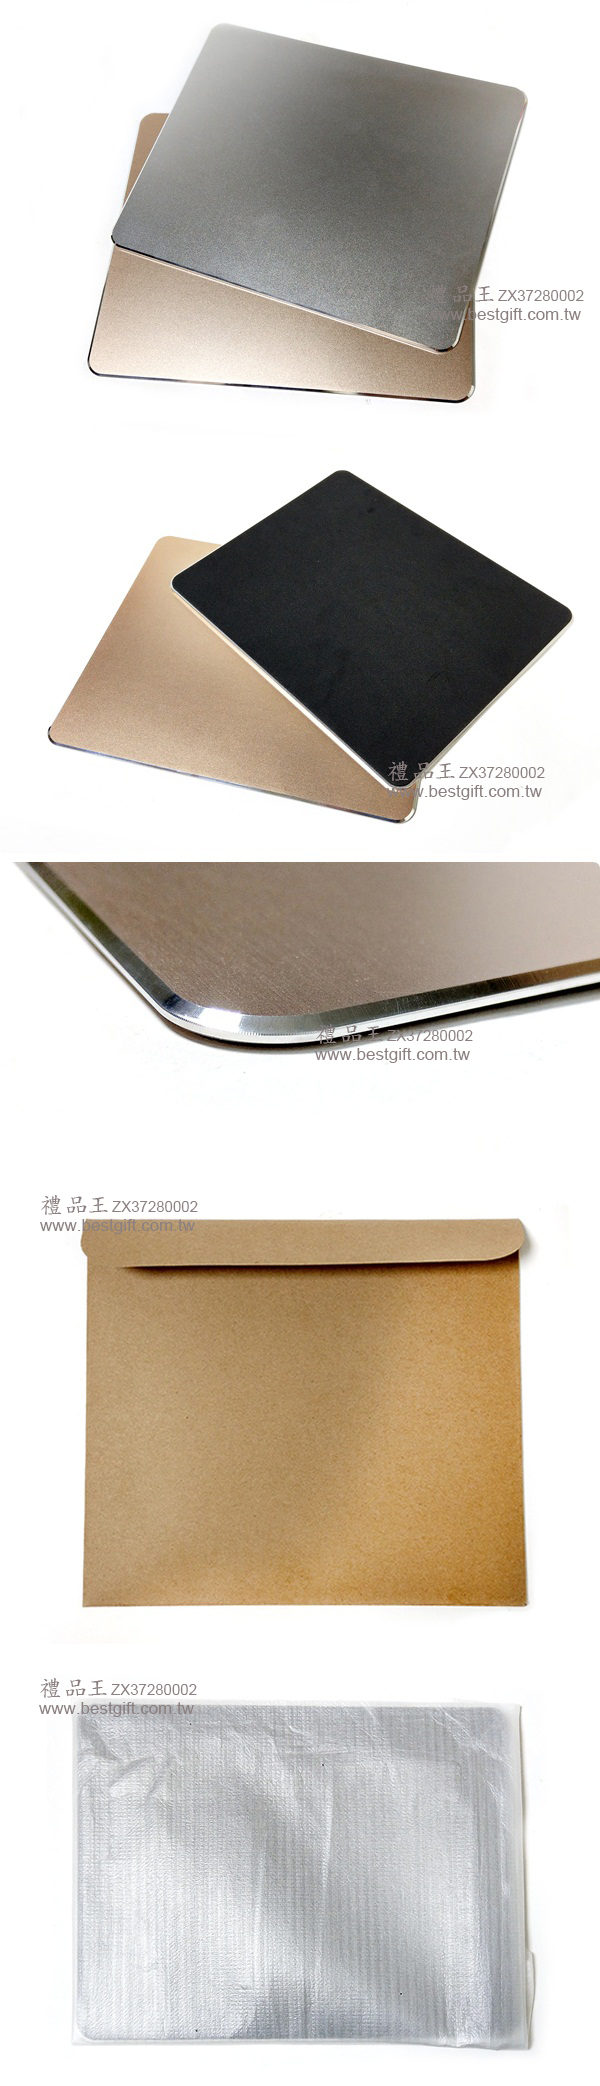 方形鋁合金滑鼠墊     商品貨號: ZX37280002